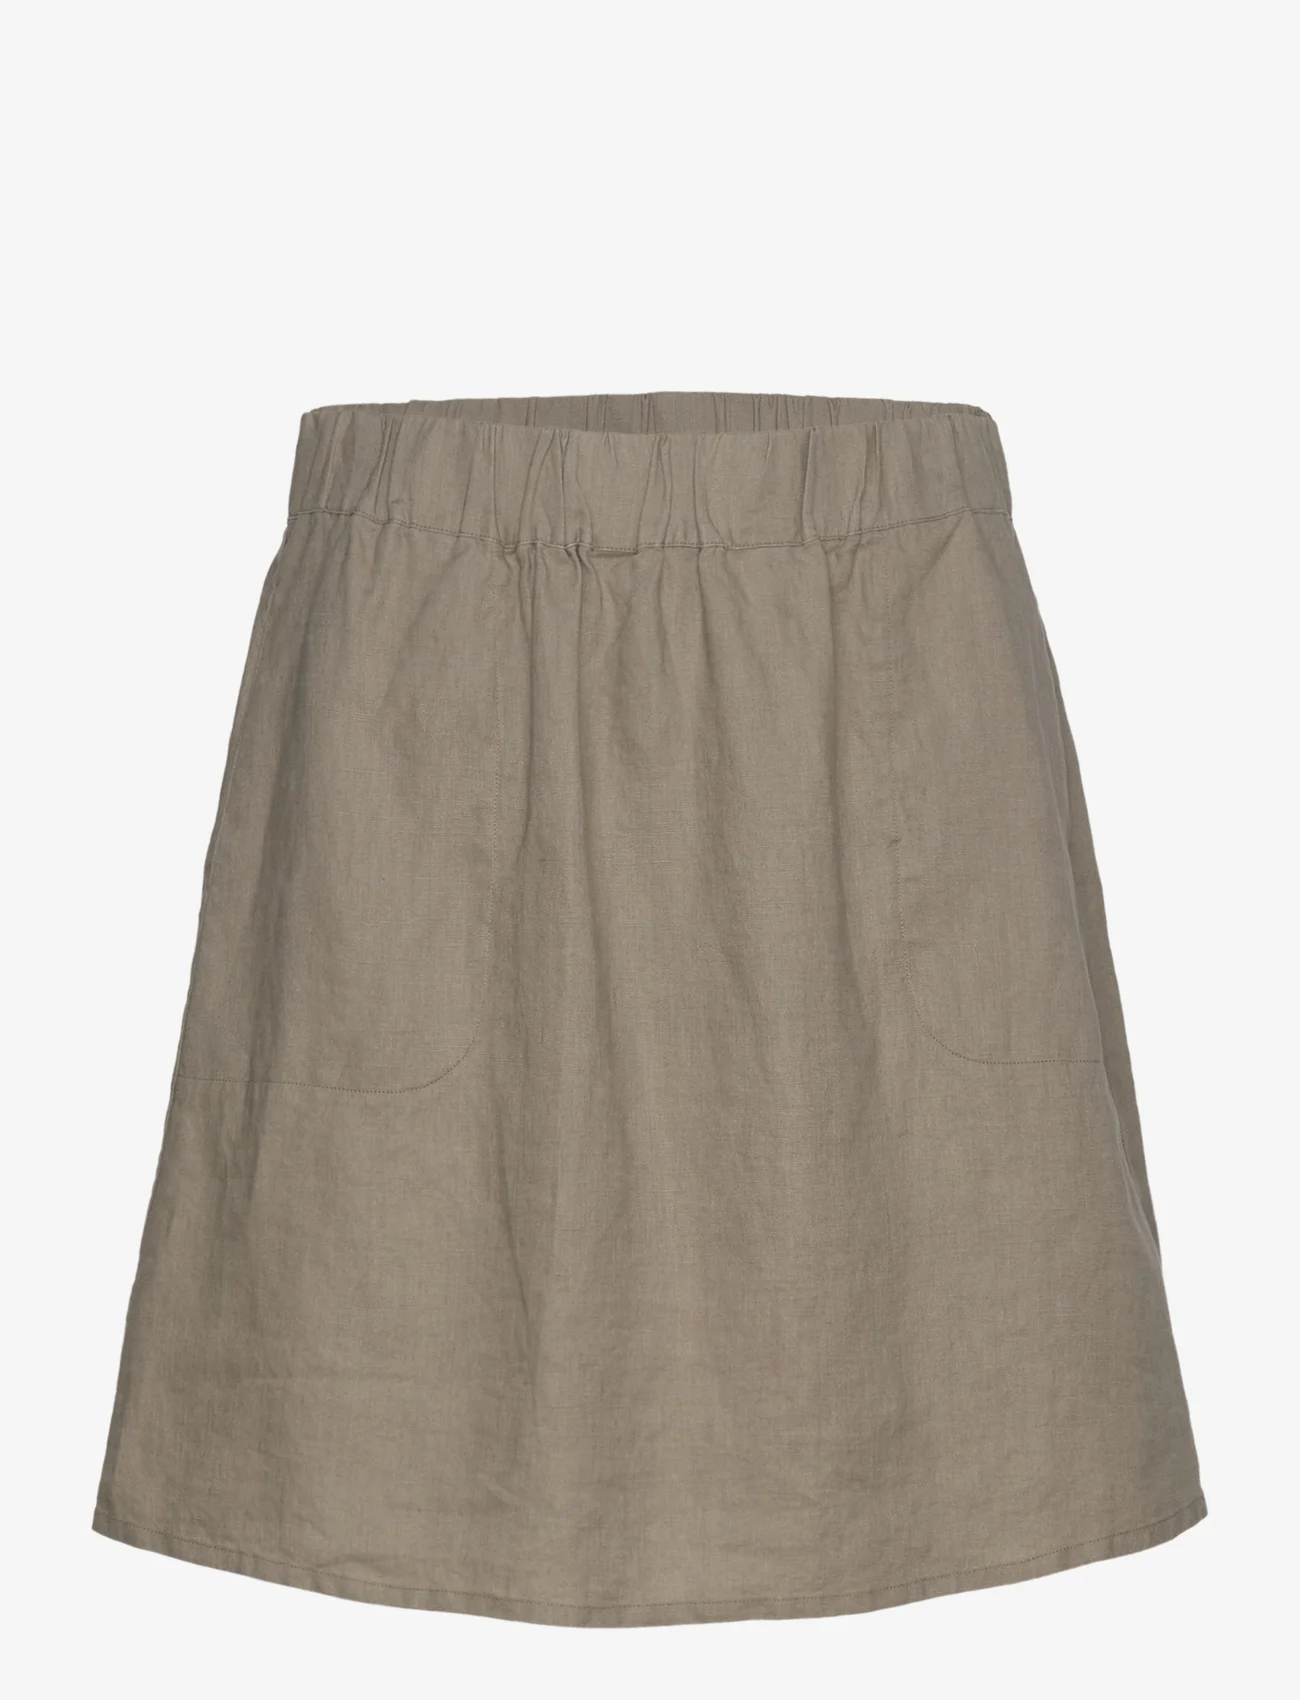 Rosemunde - Linen skirt - korte nederdele - koala - 0